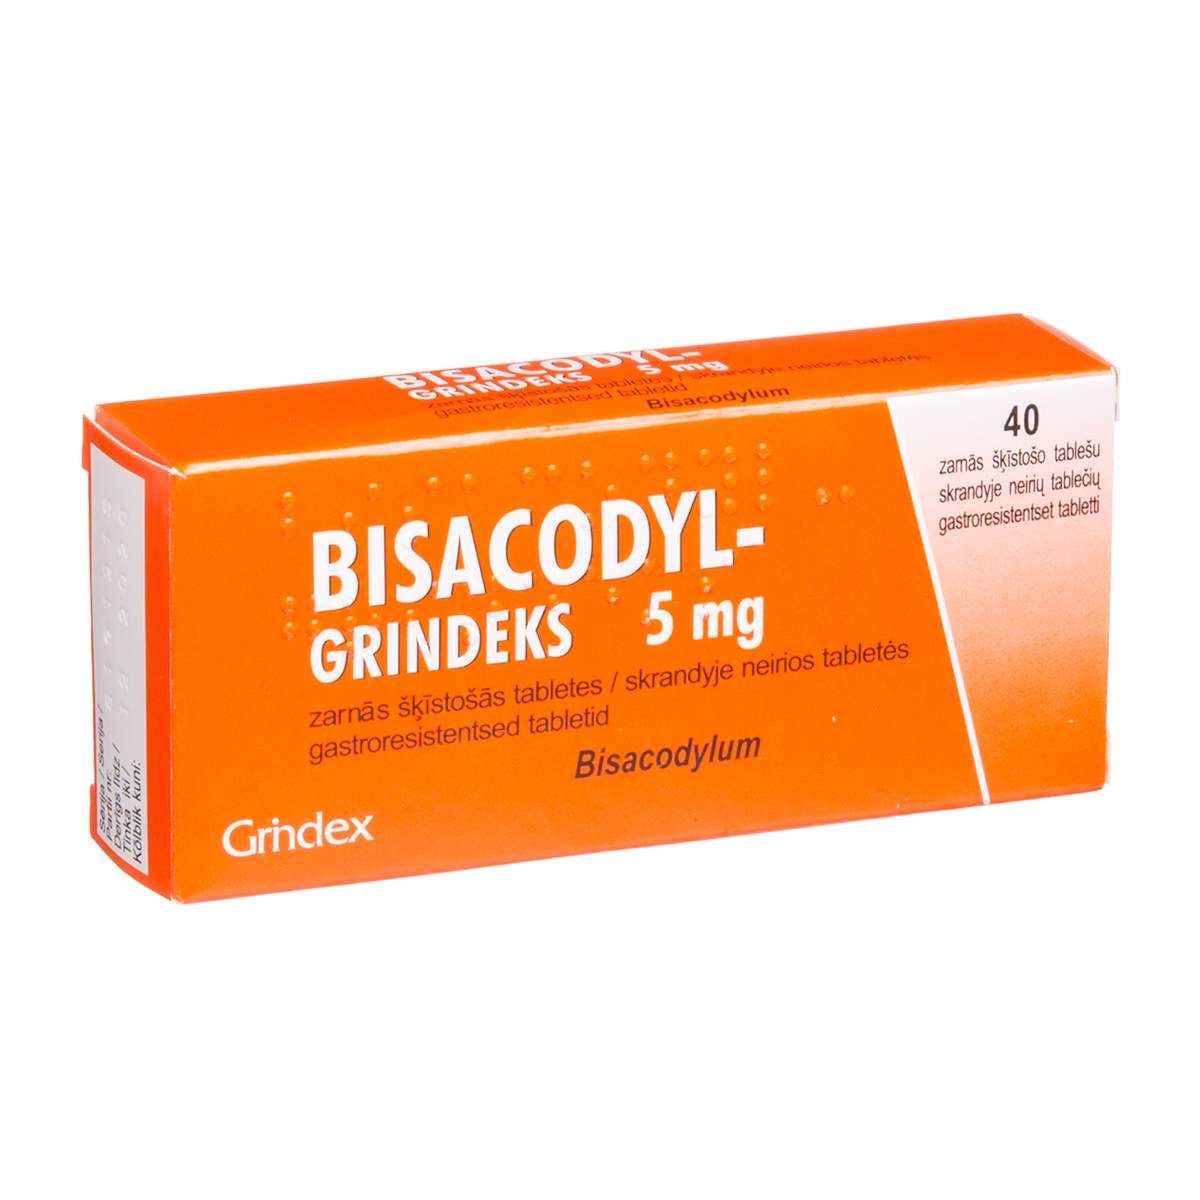 BISACODYL-GRINDEKS, 5 mg, skrandyje neirios tabletės, N40